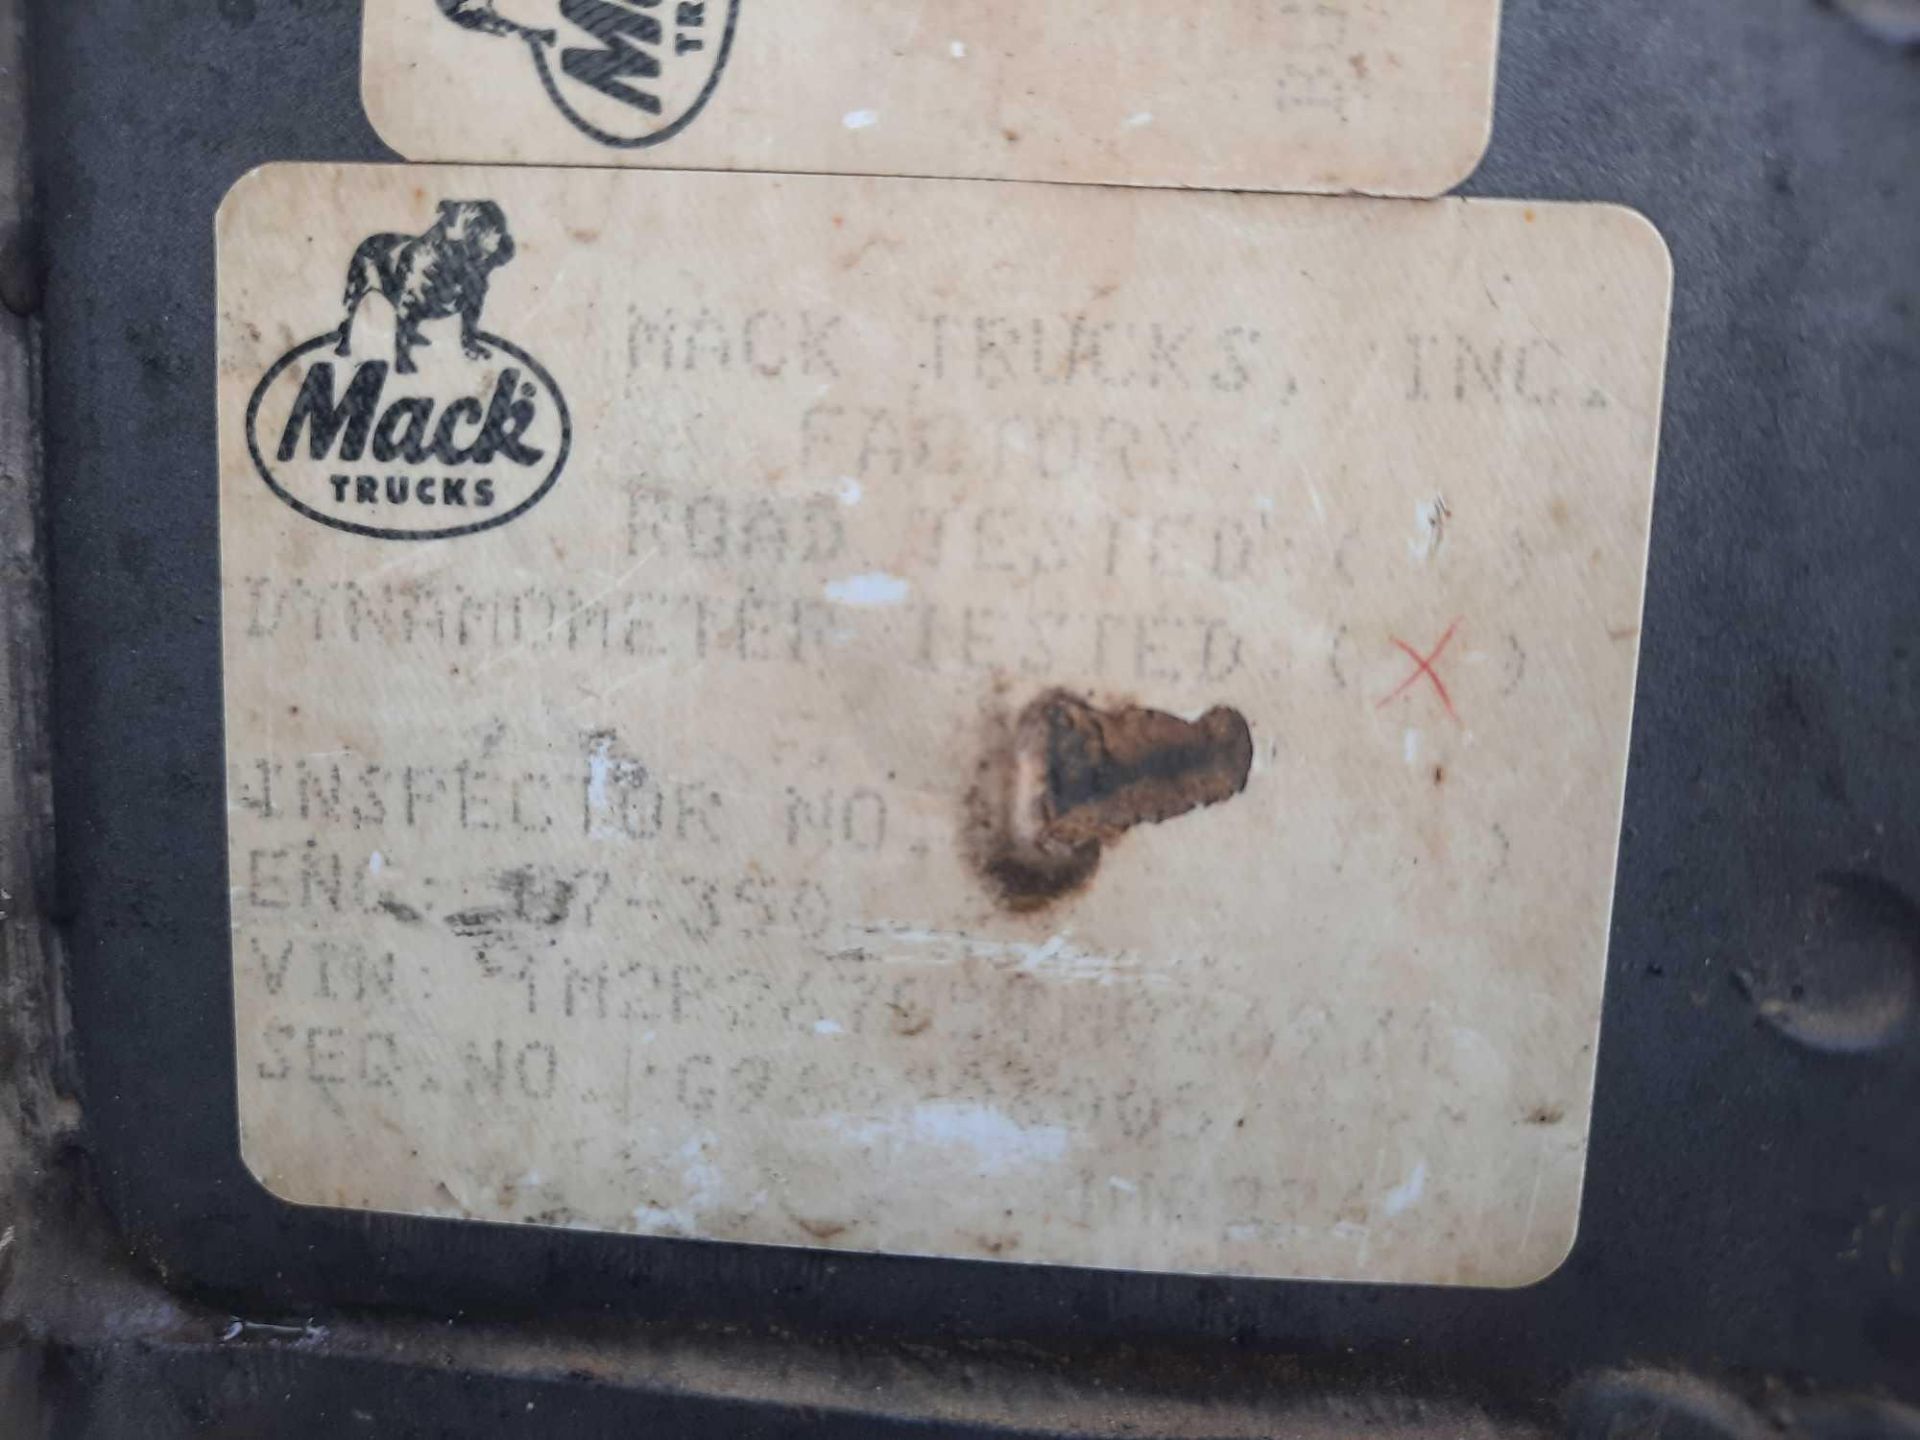 1996 Mack T/A Dump Truck - Image 10 of 38